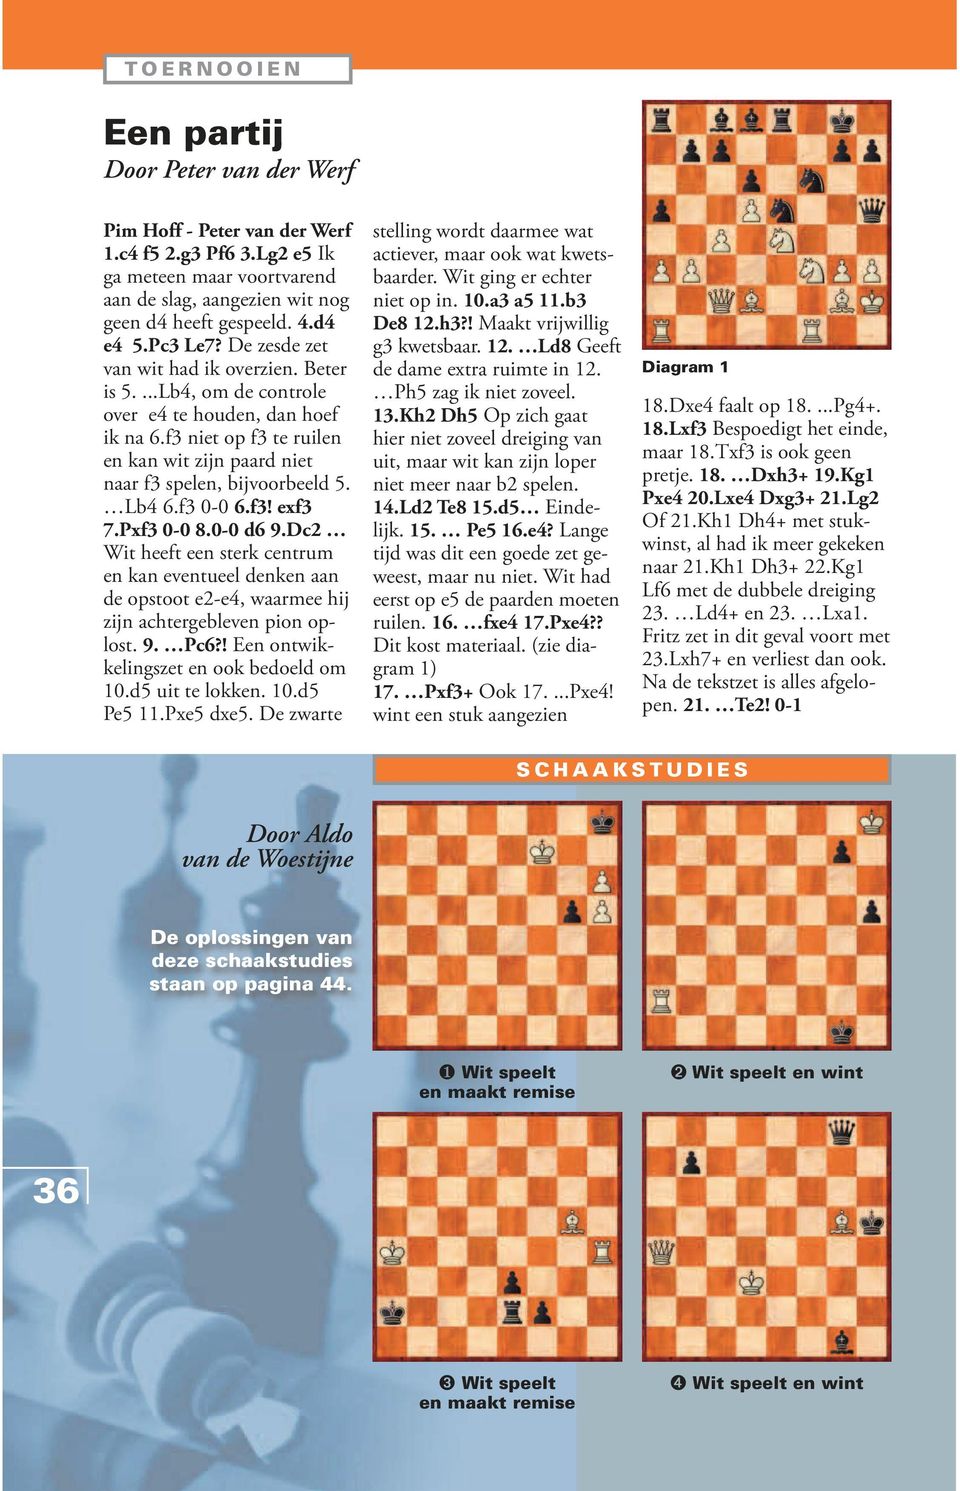 f3 0-0 6.f3! exf3 7.Pxf3 0-0 8.0-0 d6 9.Dc2 Wit heeft een sterk centrum en kan eventueel denken aan de opstoot e2-e4, waarmee hij zijn achtergebleven pion oplost. 9. Pc6?